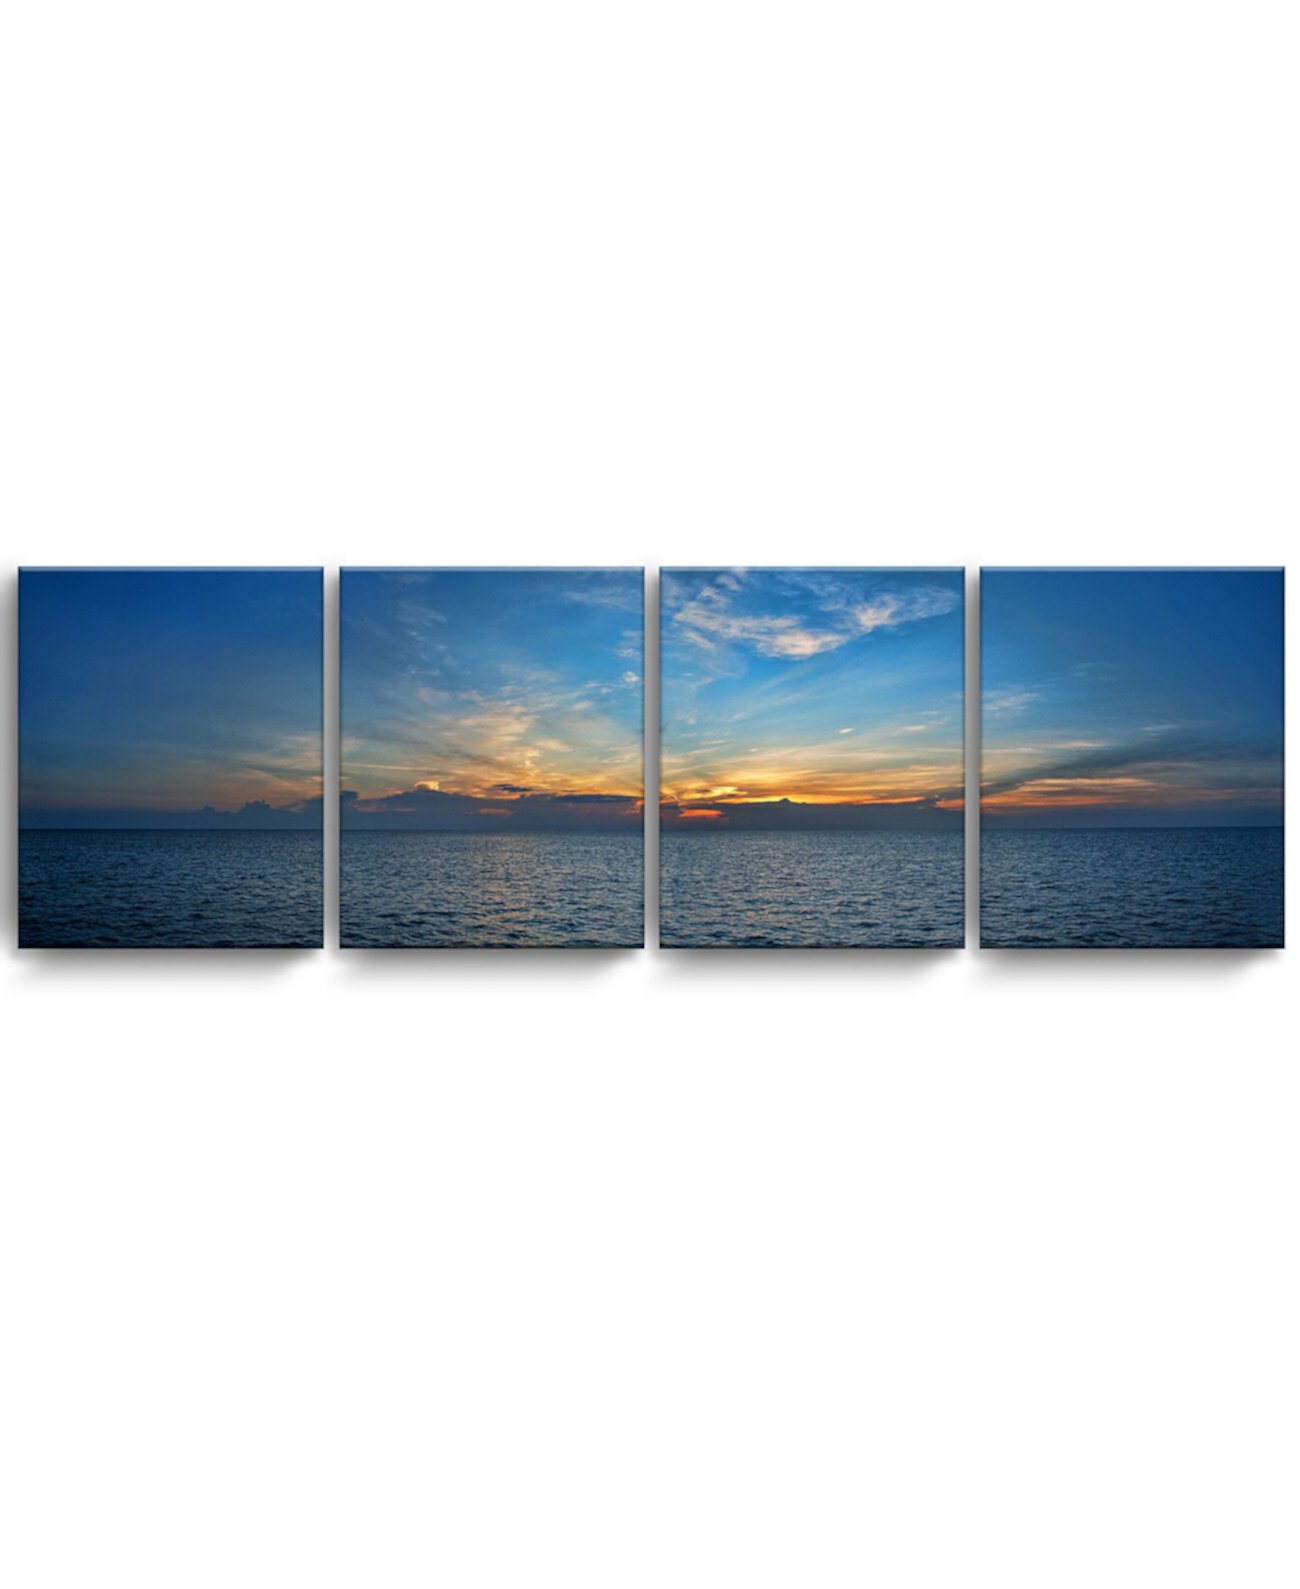 Набор для рисования прибрежных стен из 4 предметов на холсте Bahamas Sunset, 20 "x 64" Ready2HangArt